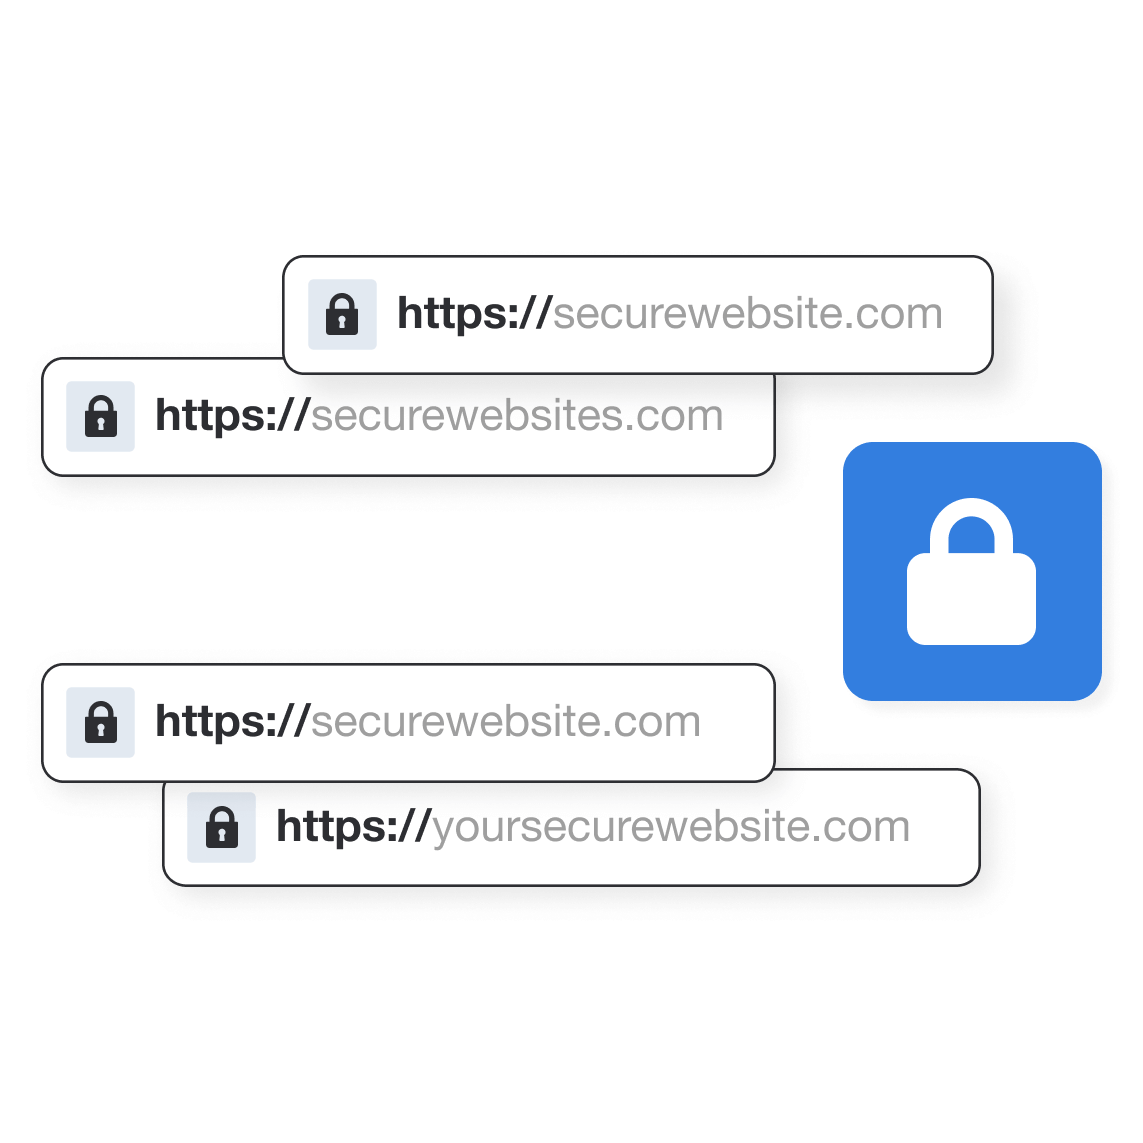 Δημιουργία ασφαλών ιστοσελίδων με HTTPS